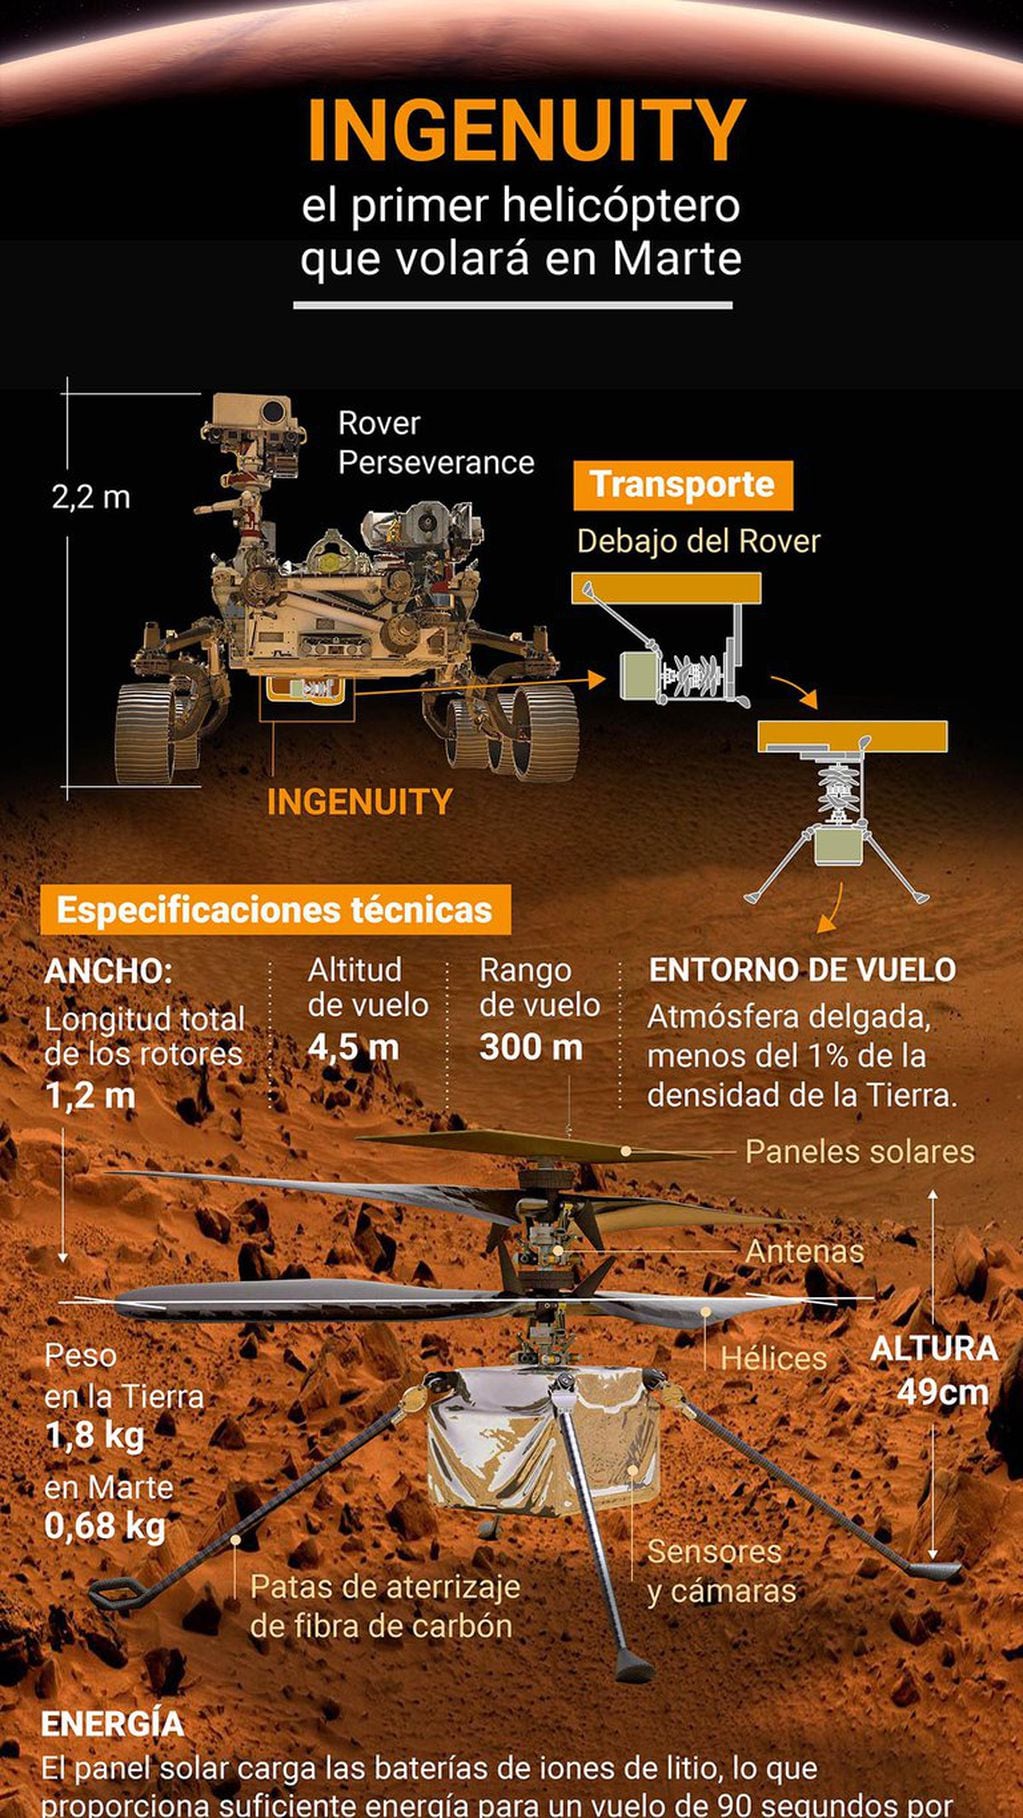 El helicóptero Ingenuity de la NASA realizó exitosamente su primer vuelo en Marte